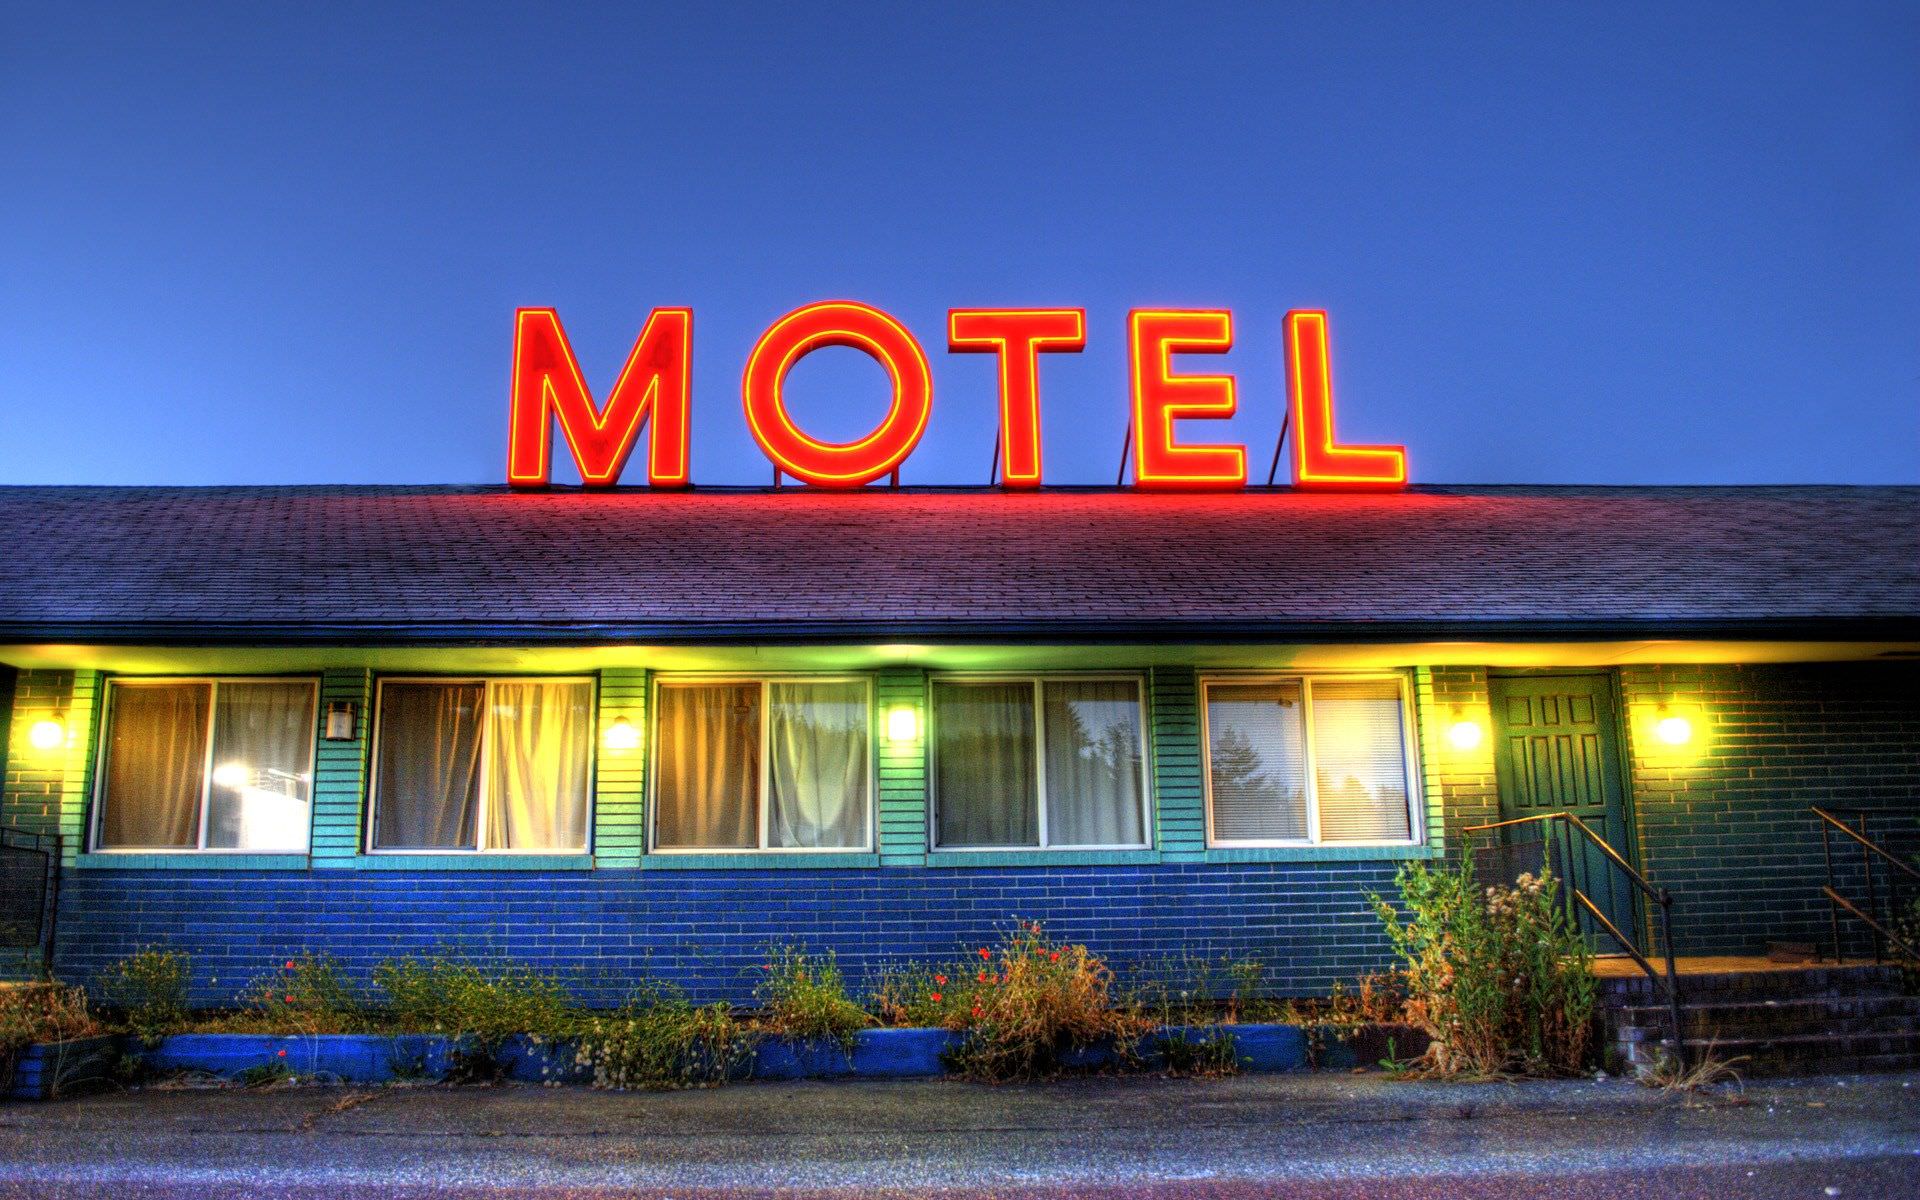 Veja nove segredos nojentos sobre motel que você nem imagina